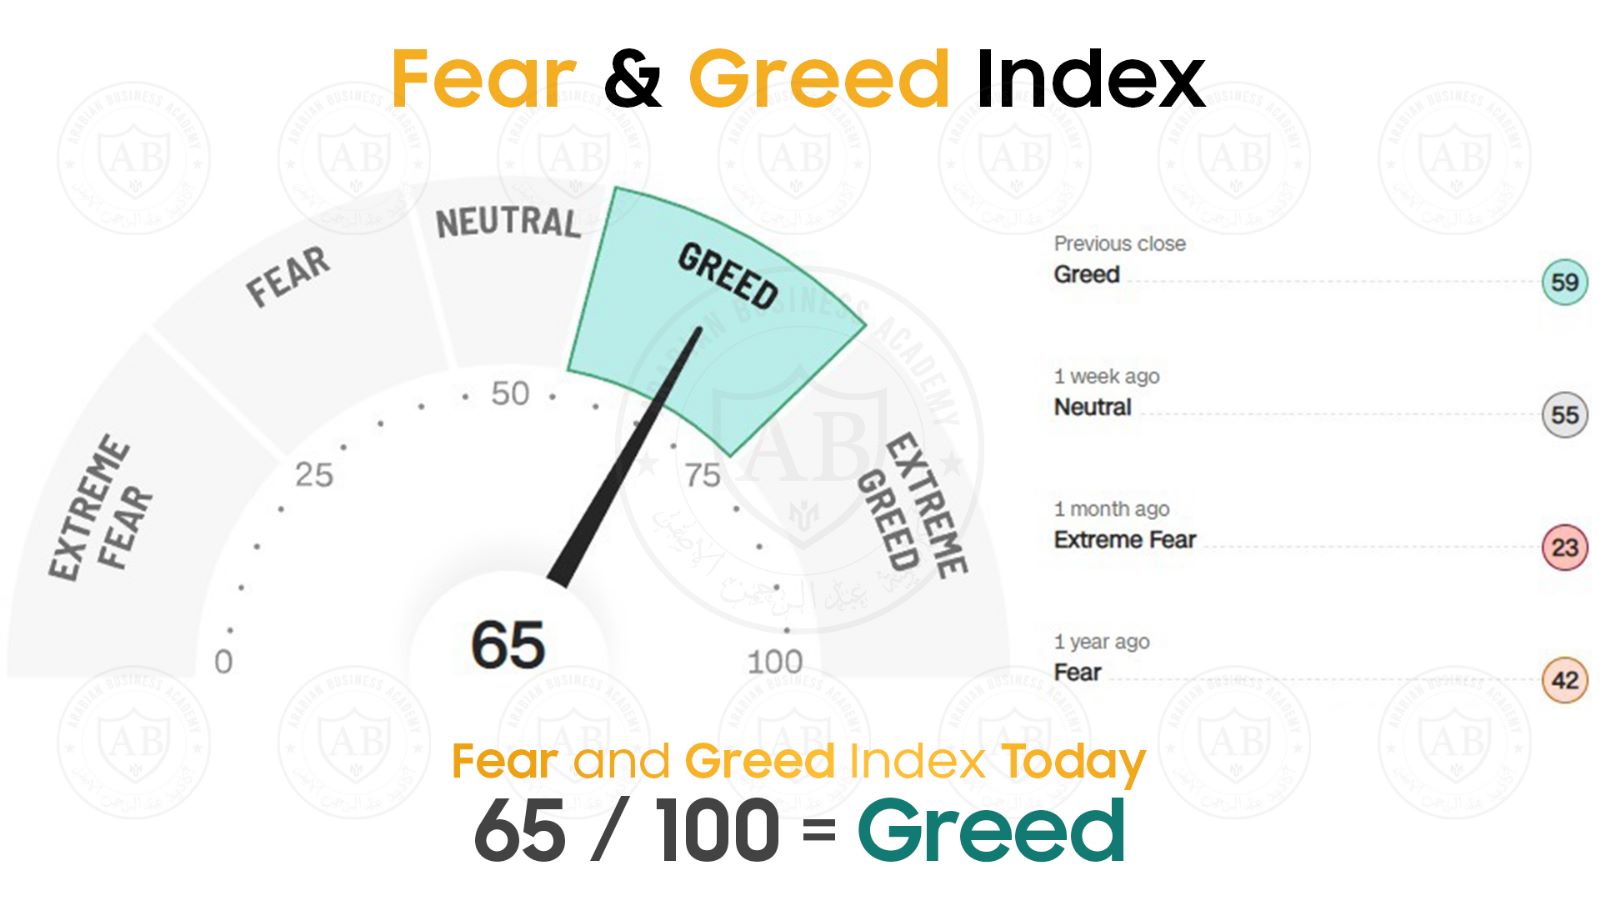 مؤشر  Fear and Greed  في أسواق الأسهم يشير  الى 65 /100  لجلسة اليوم